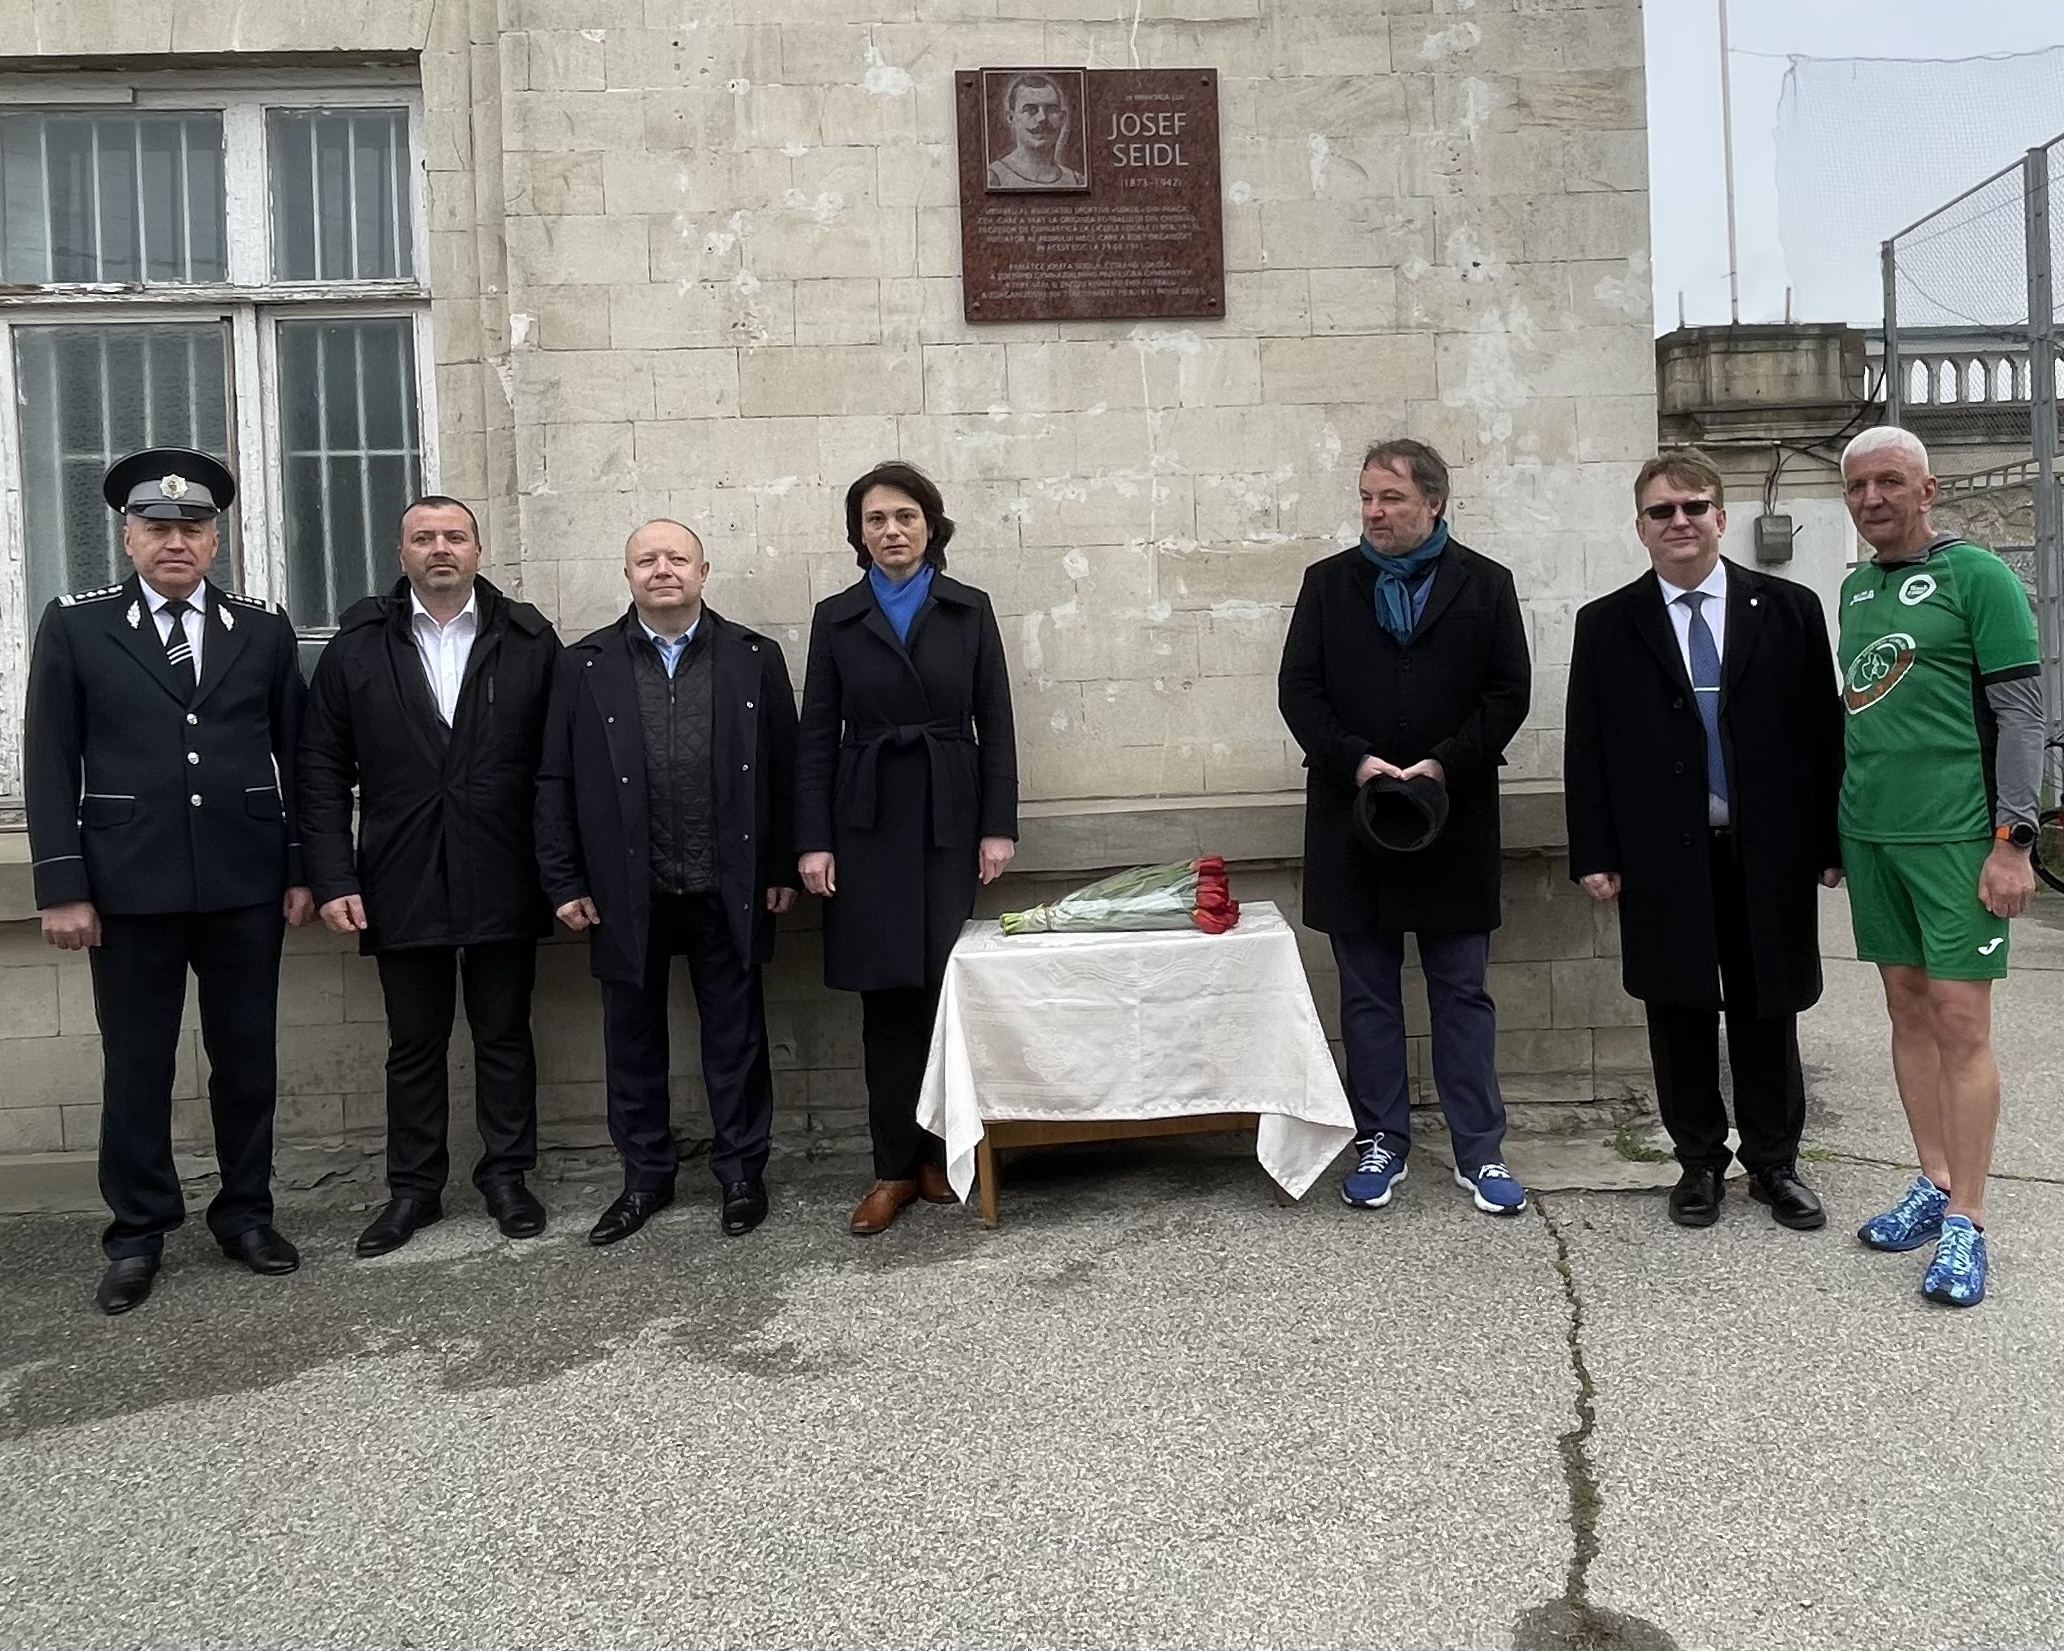 Conducerea MAI a participat la dezvelirea plăcii comemorative dedicate cehului Josef Seidl